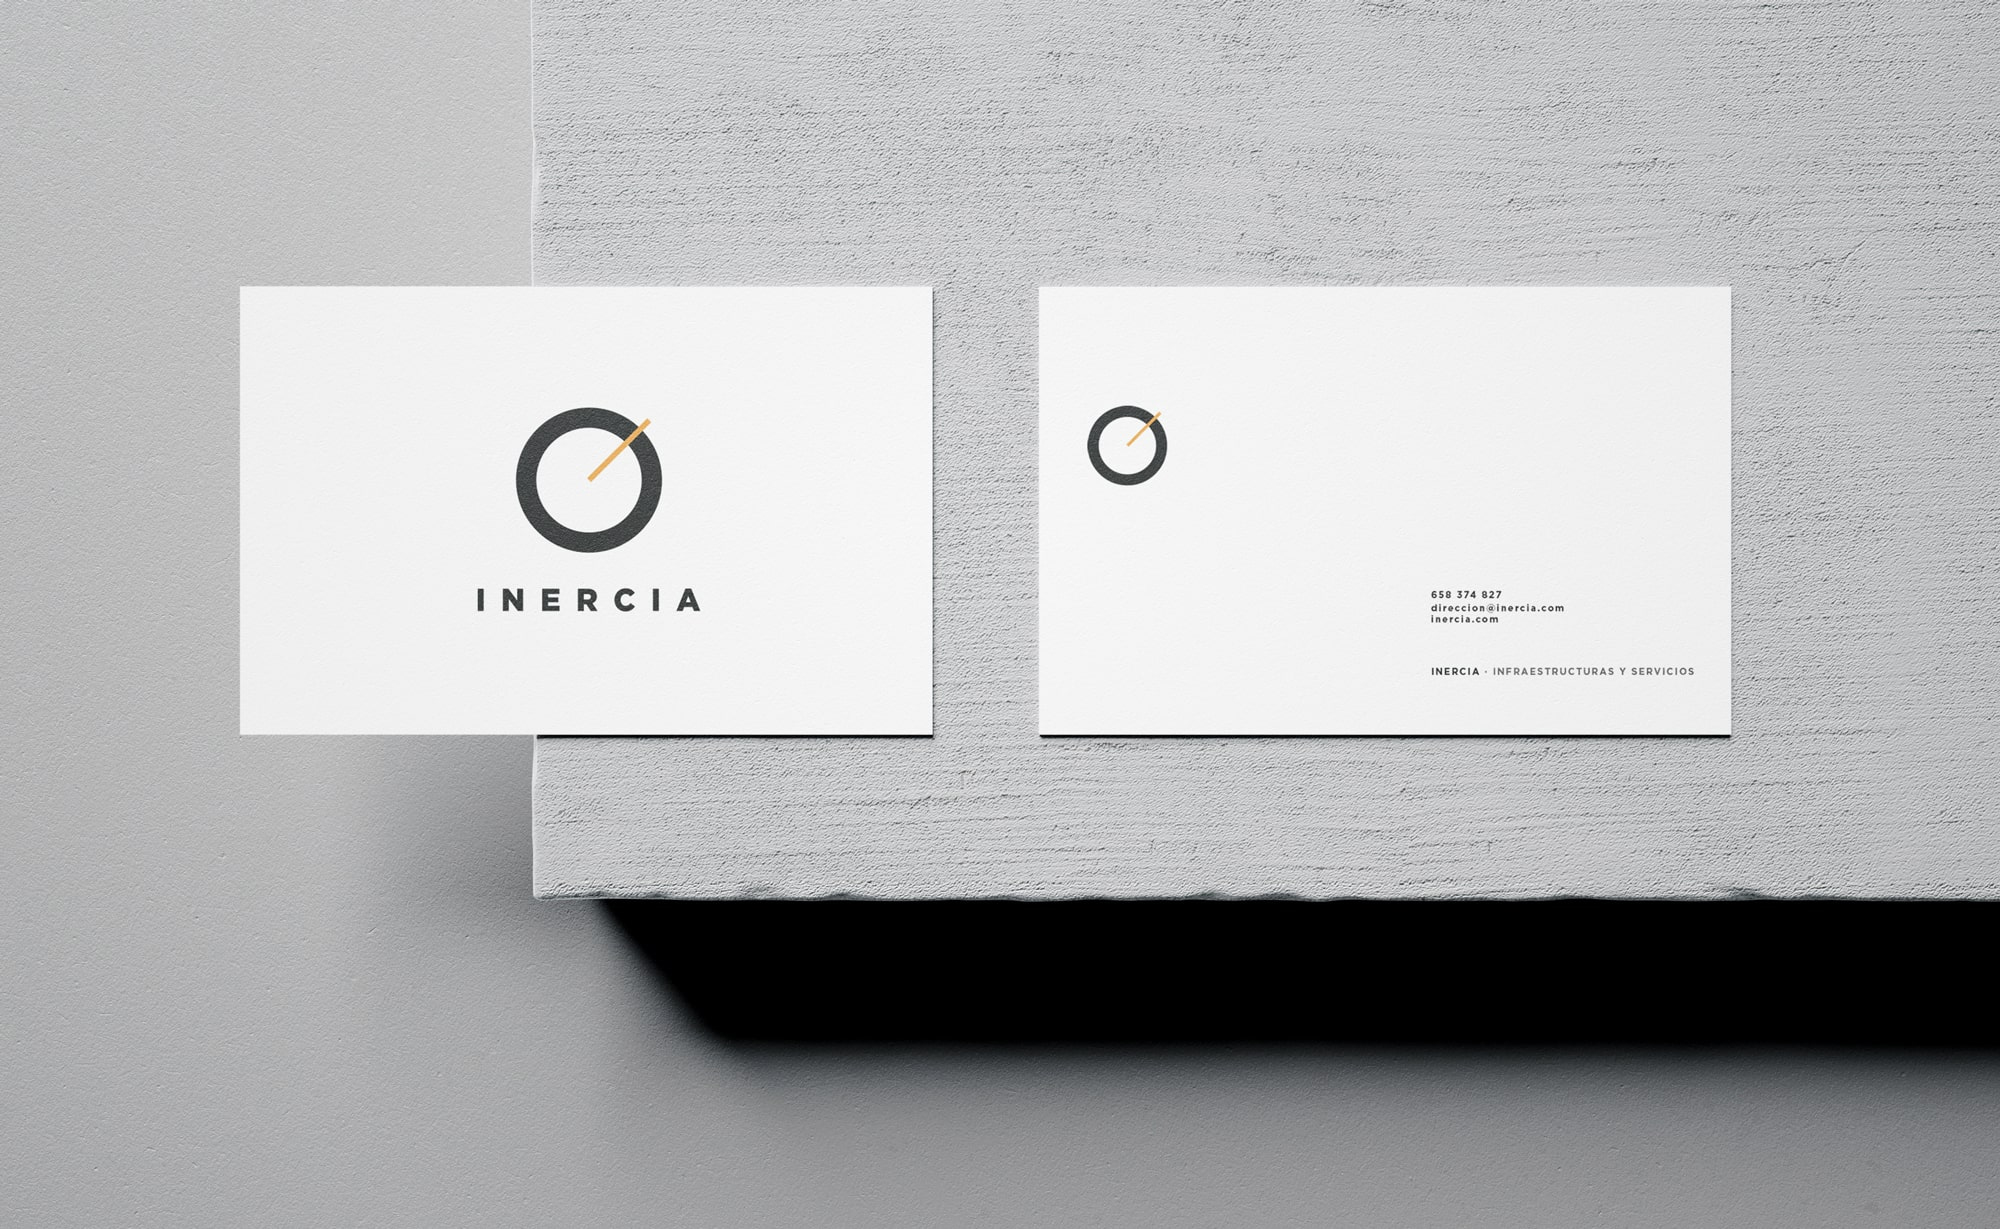 Diseño y desarrollo de identidad visual corporativa para Igor Fraga Fotografía. Detalle tarjeta de visita.